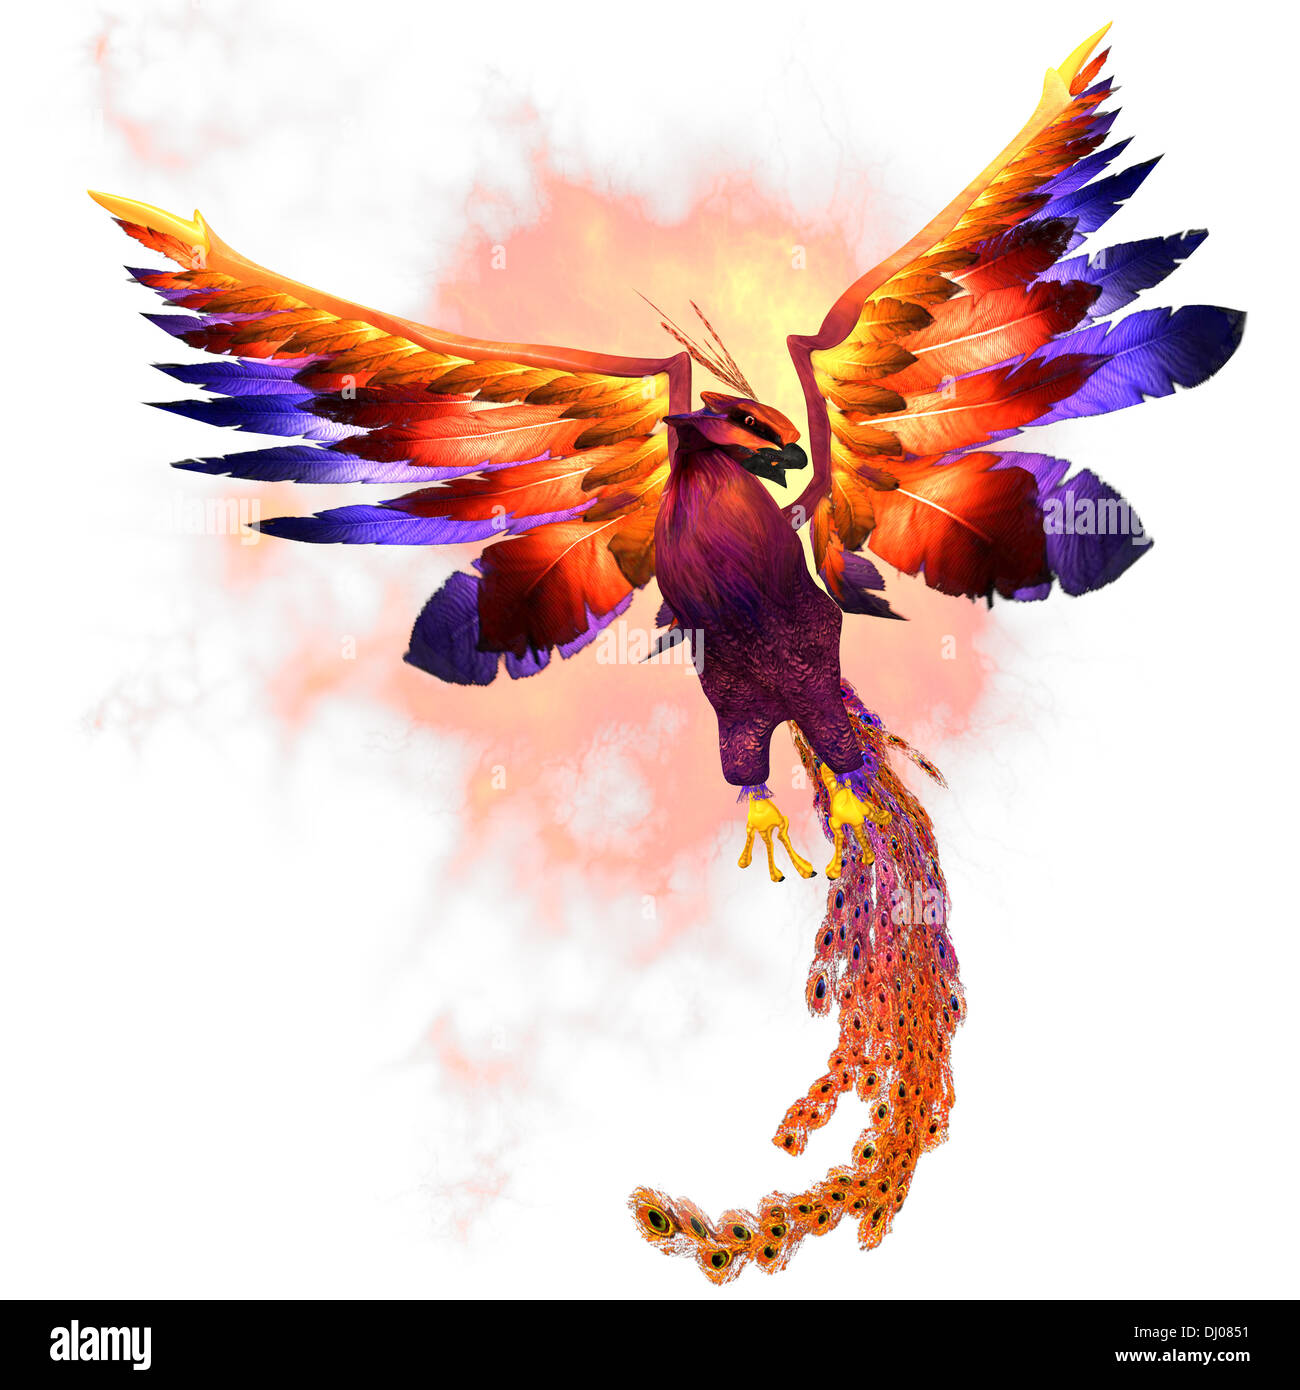 Le Phoenix Firebird est un symbole mythique de la régénération ou de renouvellement de la vie. Banque D'Images